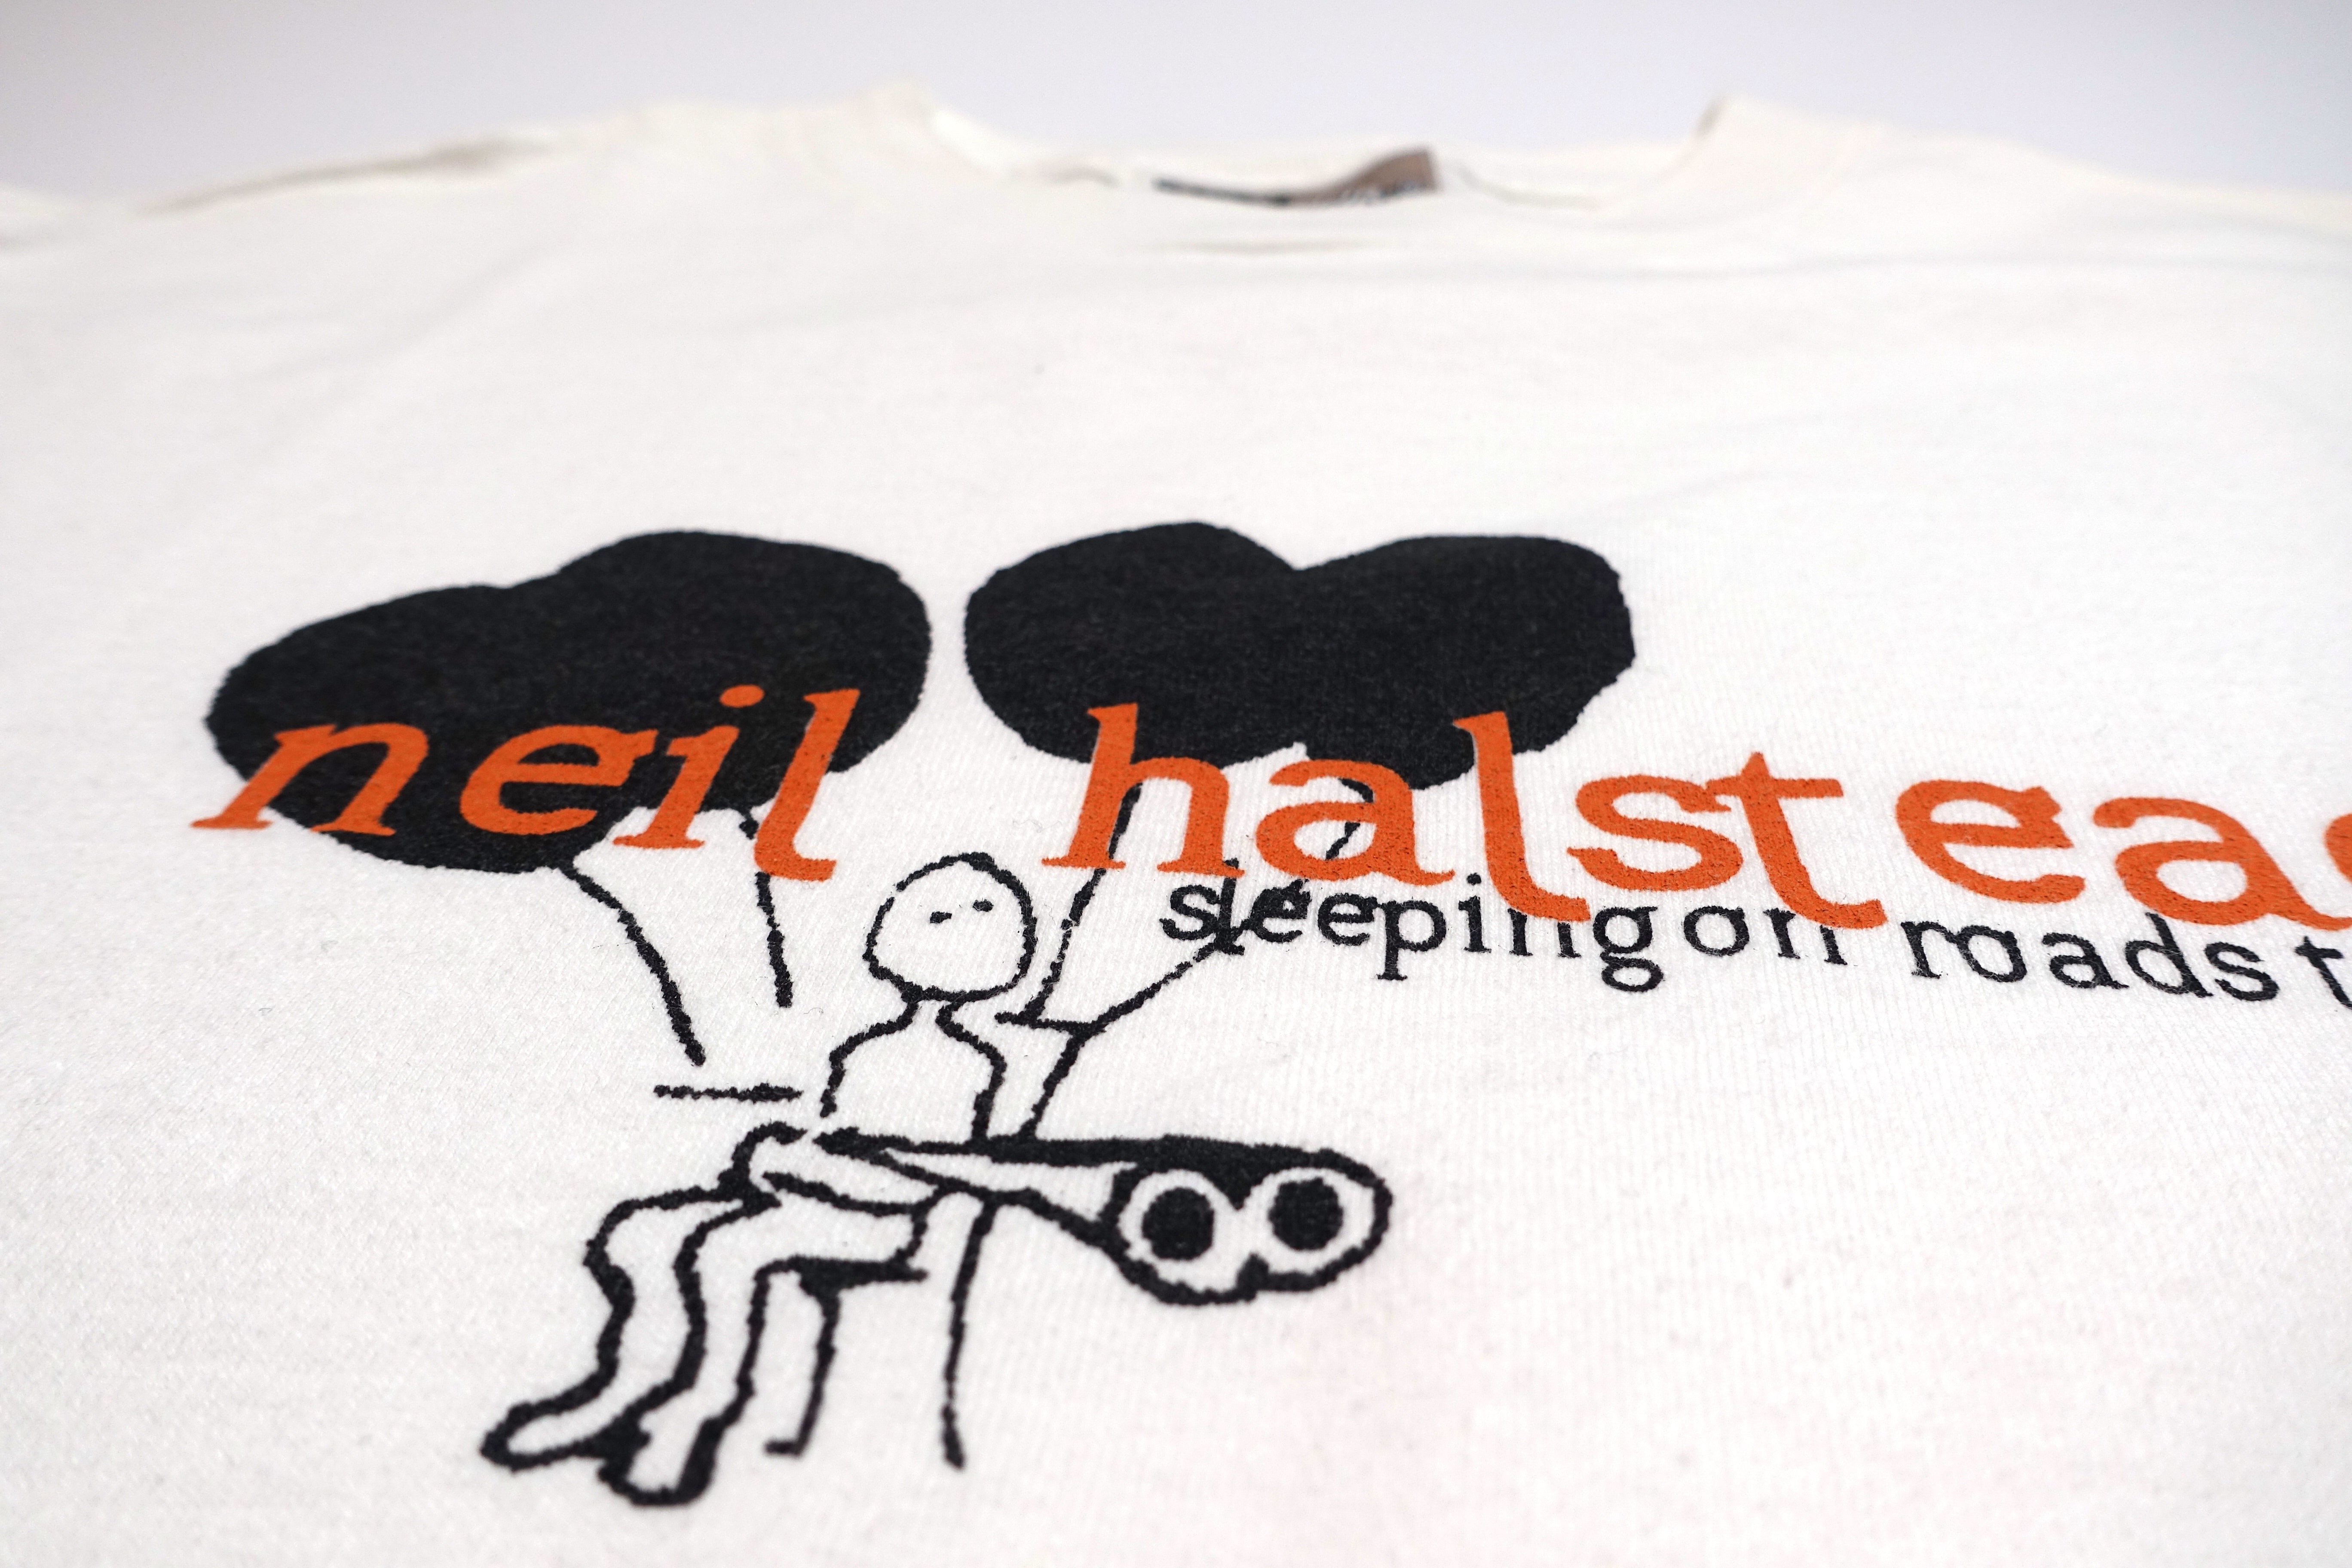 Neil Halstead - Sleeping On Roads 2001 Tour Shirt Size Medium